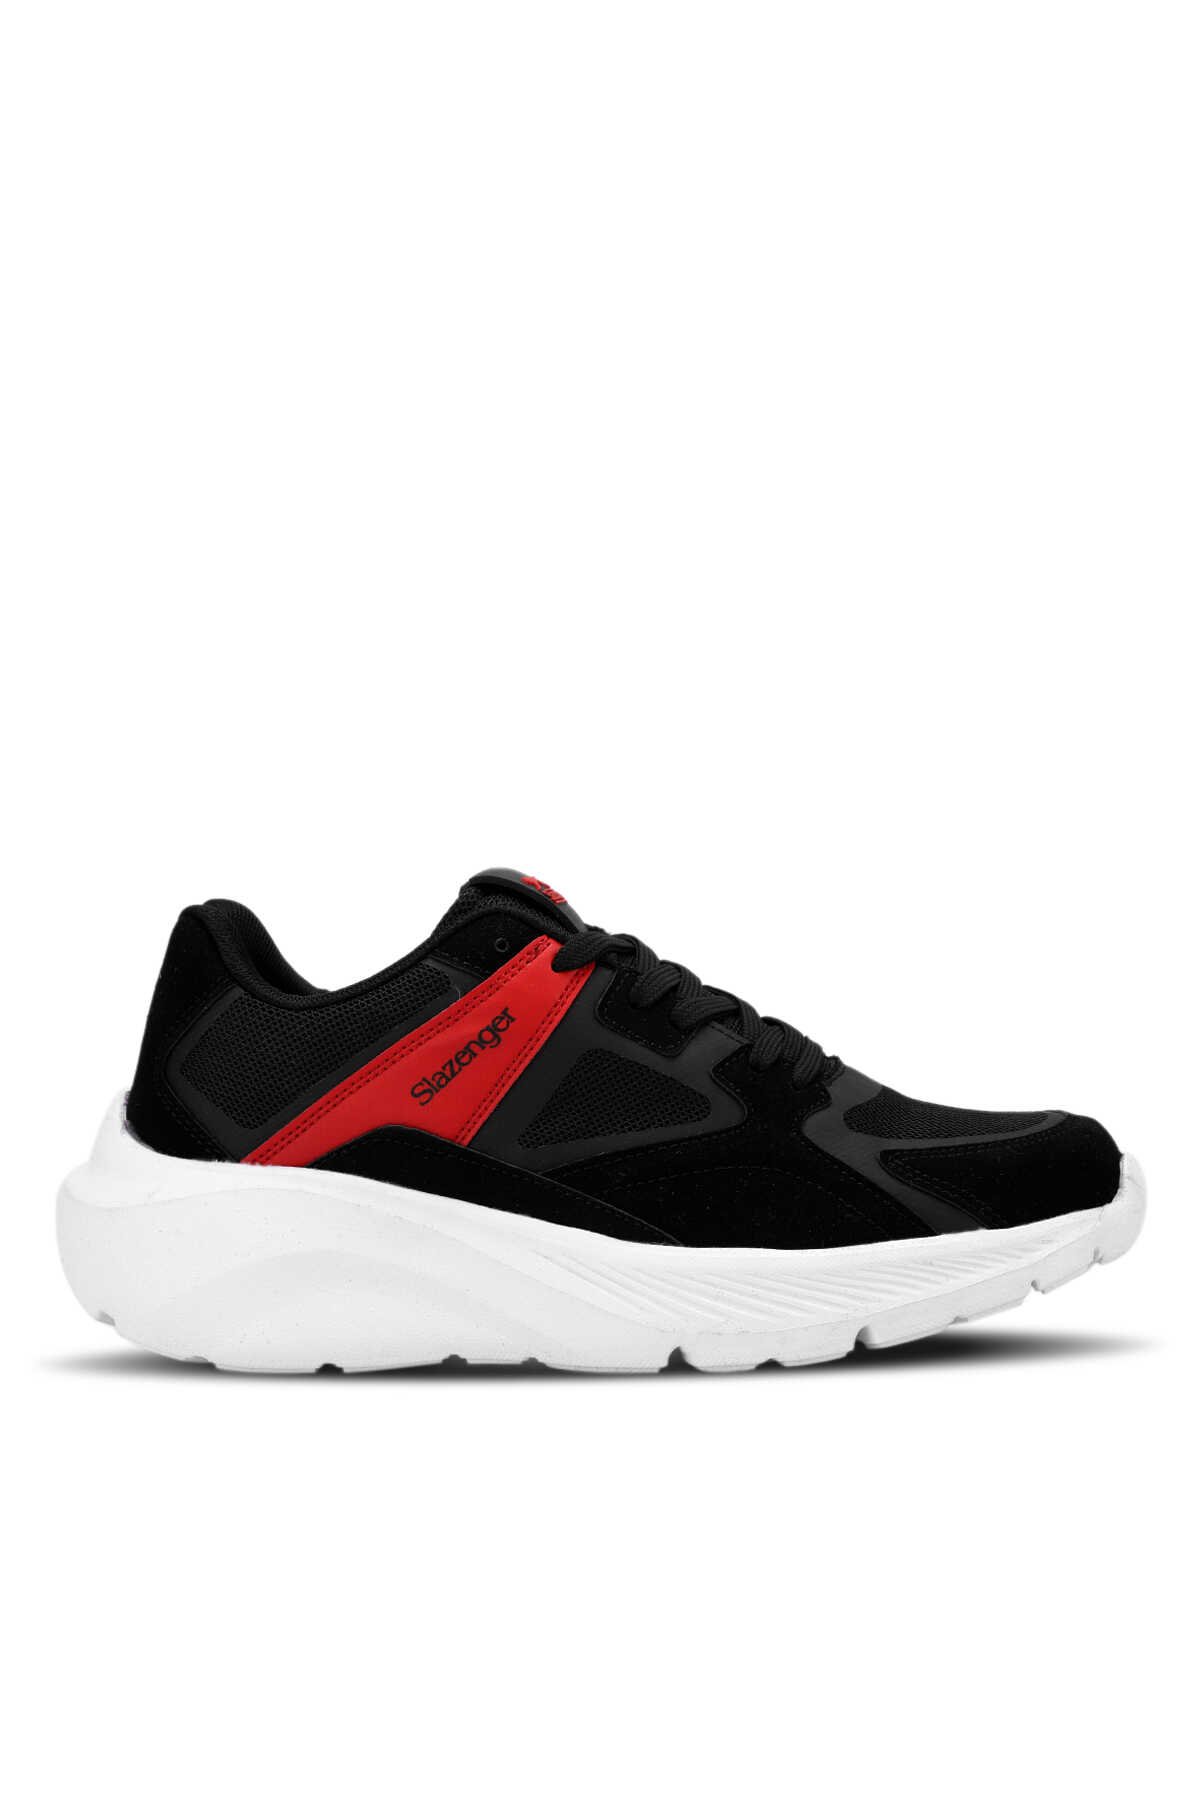 Slazenger - LAND Sneaker Erkek Ayakkabı Siyah / Kırmızı